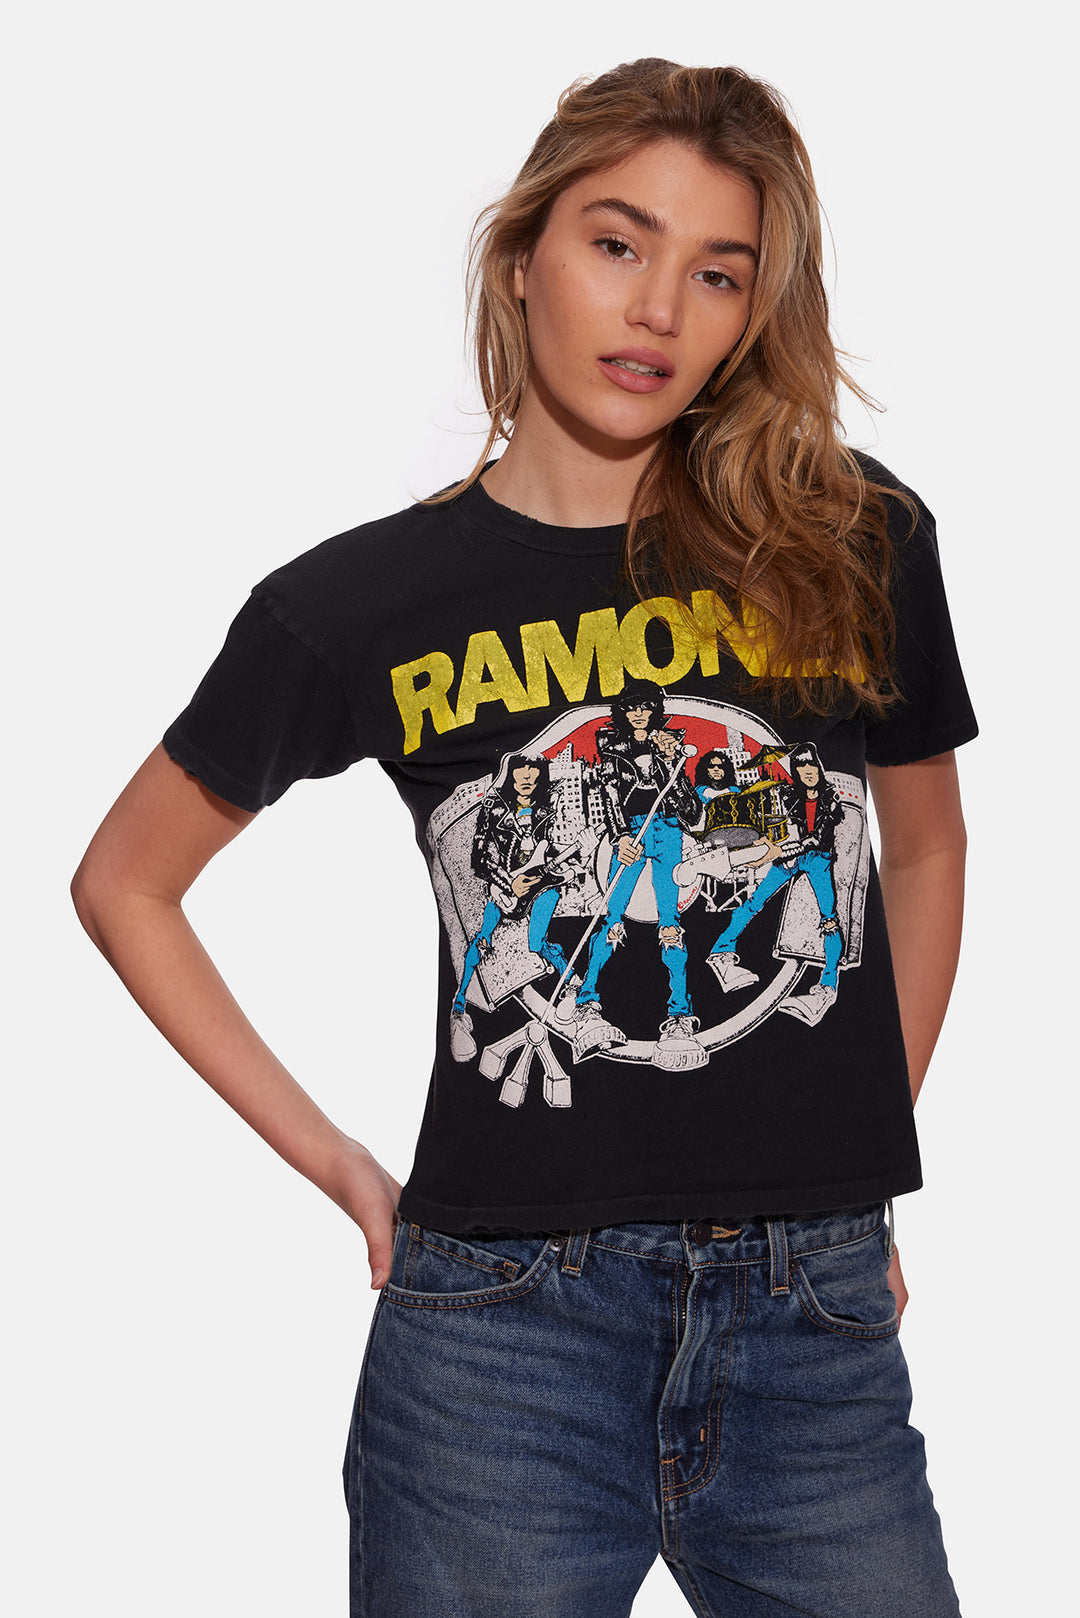 Ramones '78 Crop Tee Coal Pigment